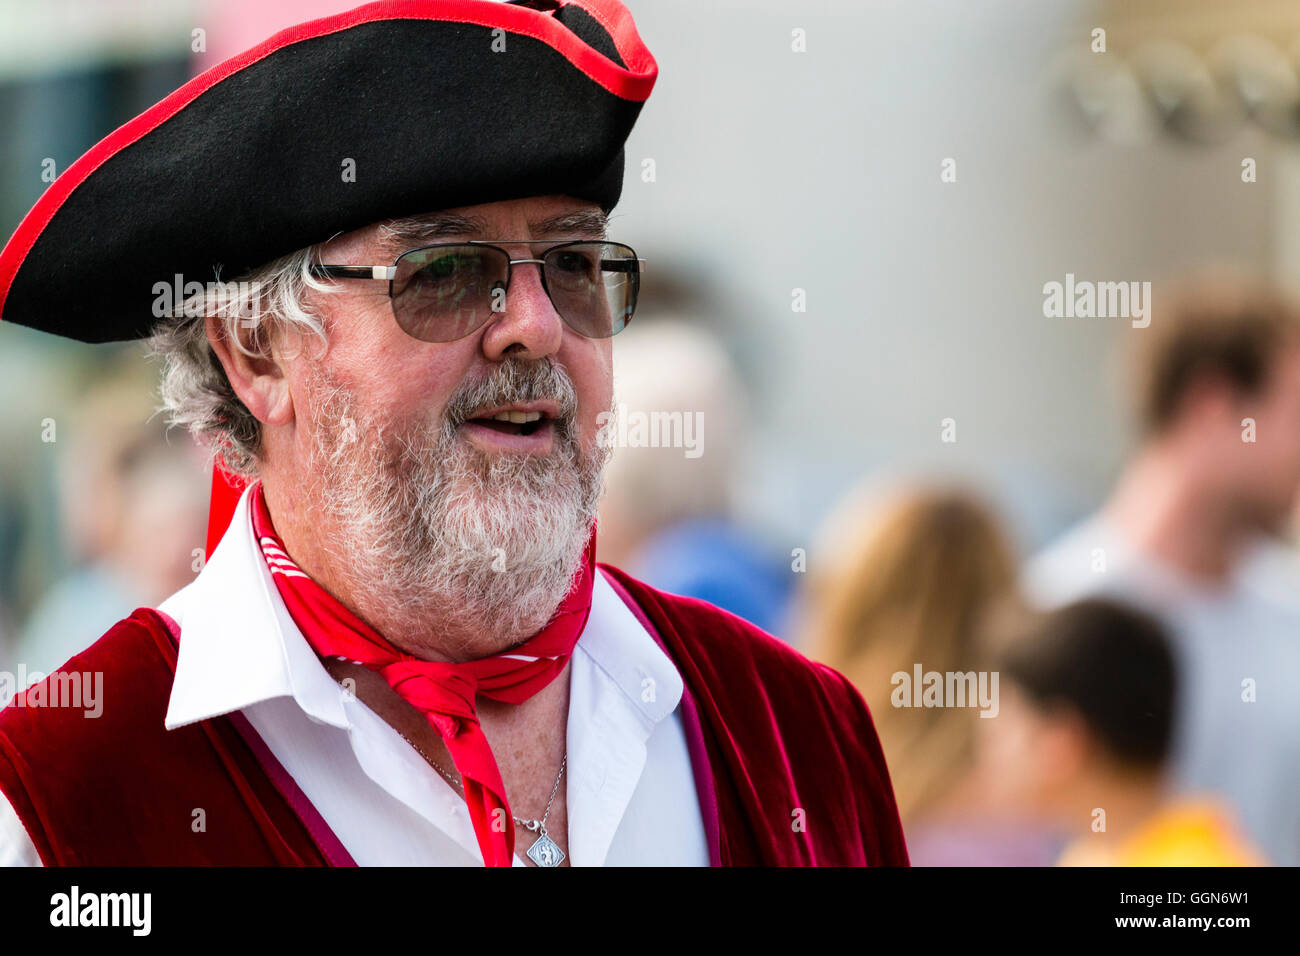 Broadstairs Folk Woche Festival. Sieg Morris Mann, reife männliche, Gesicht schoss, Gläser und weiß grau Bart lächelnd. Piraten Hut tragen. Stockfoto